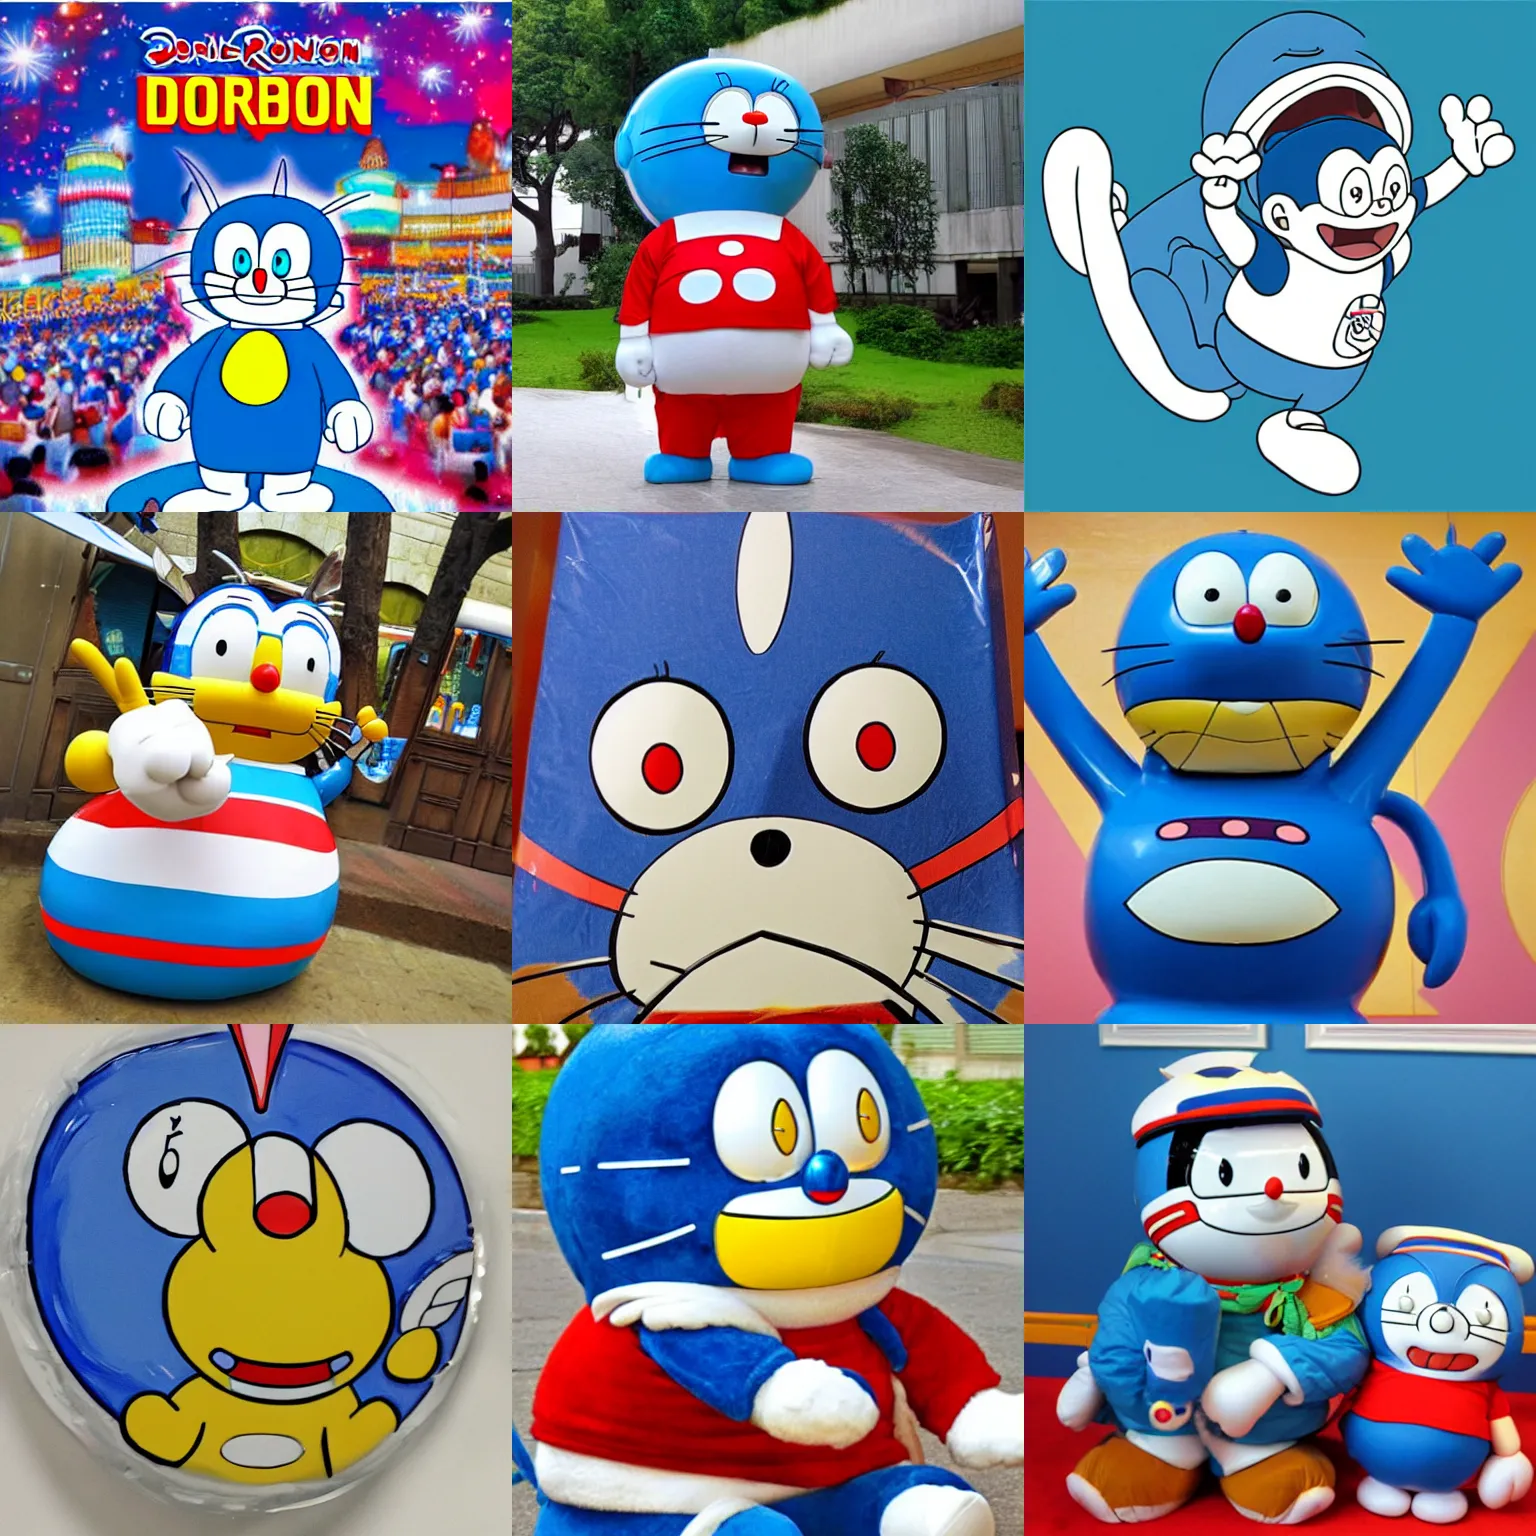 Prompt: Doraemon